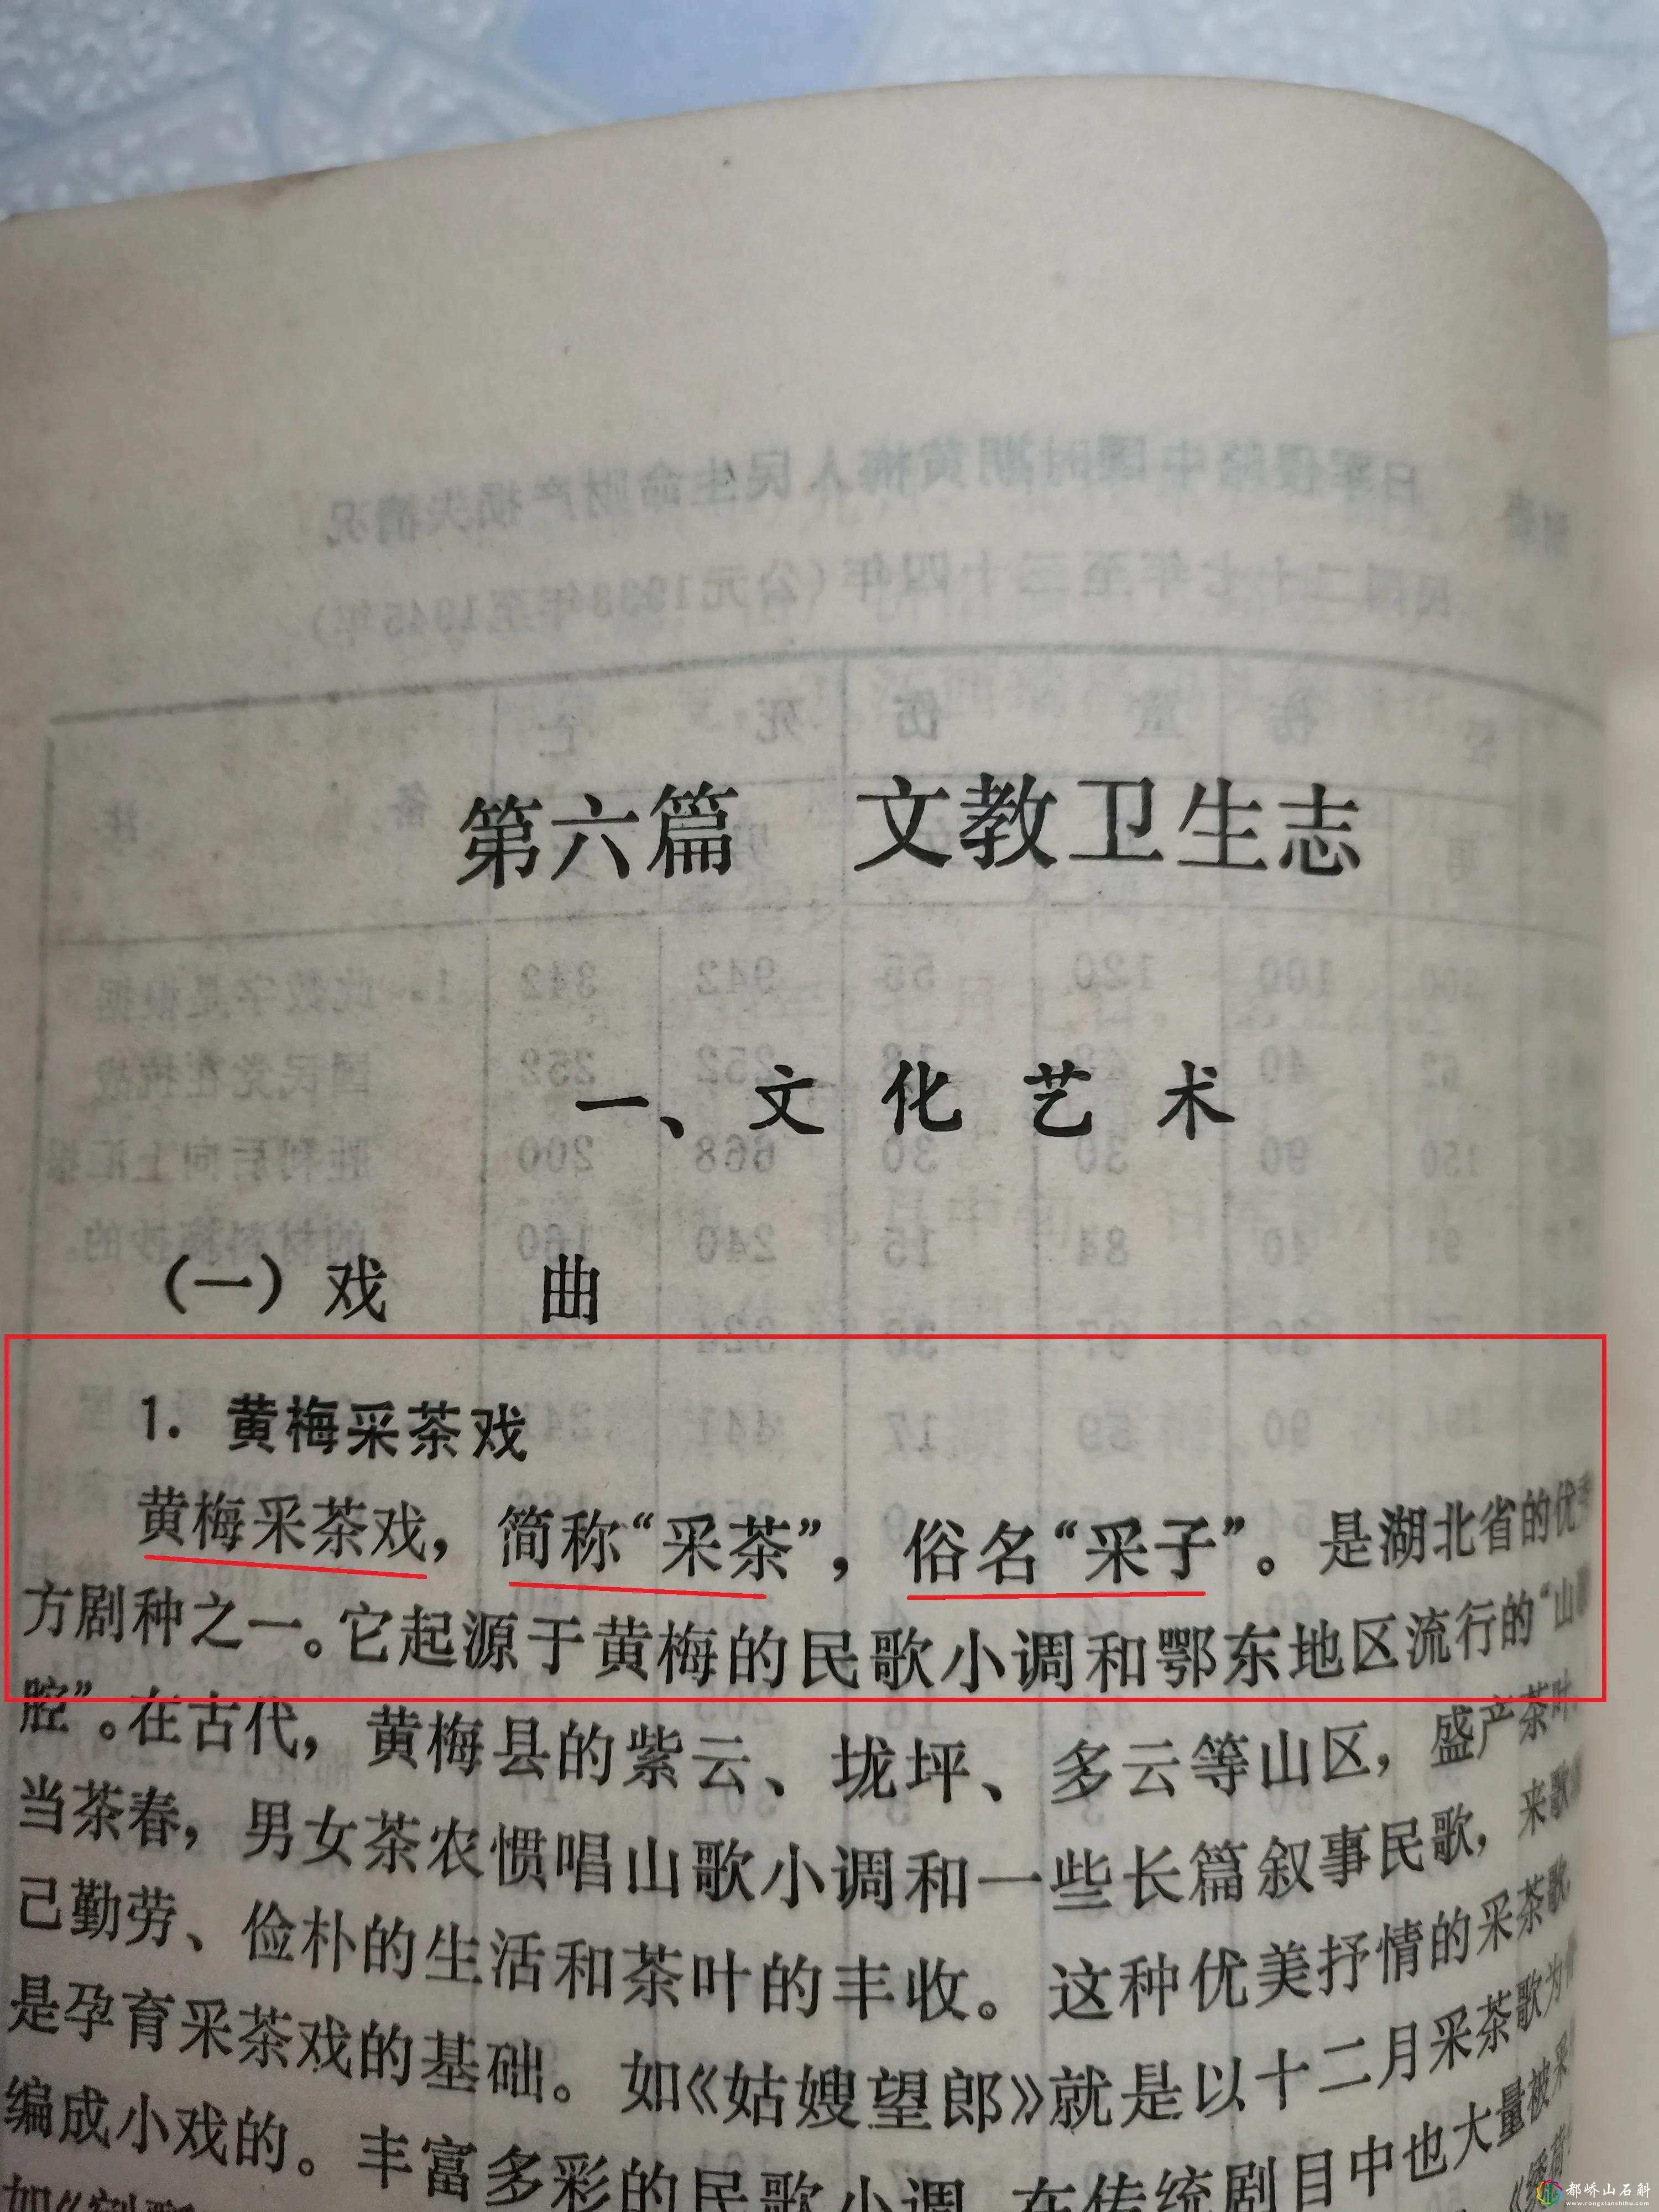 黄梅戏起源安庆有证据，采茶调传入怀宁纯属“伪命题”